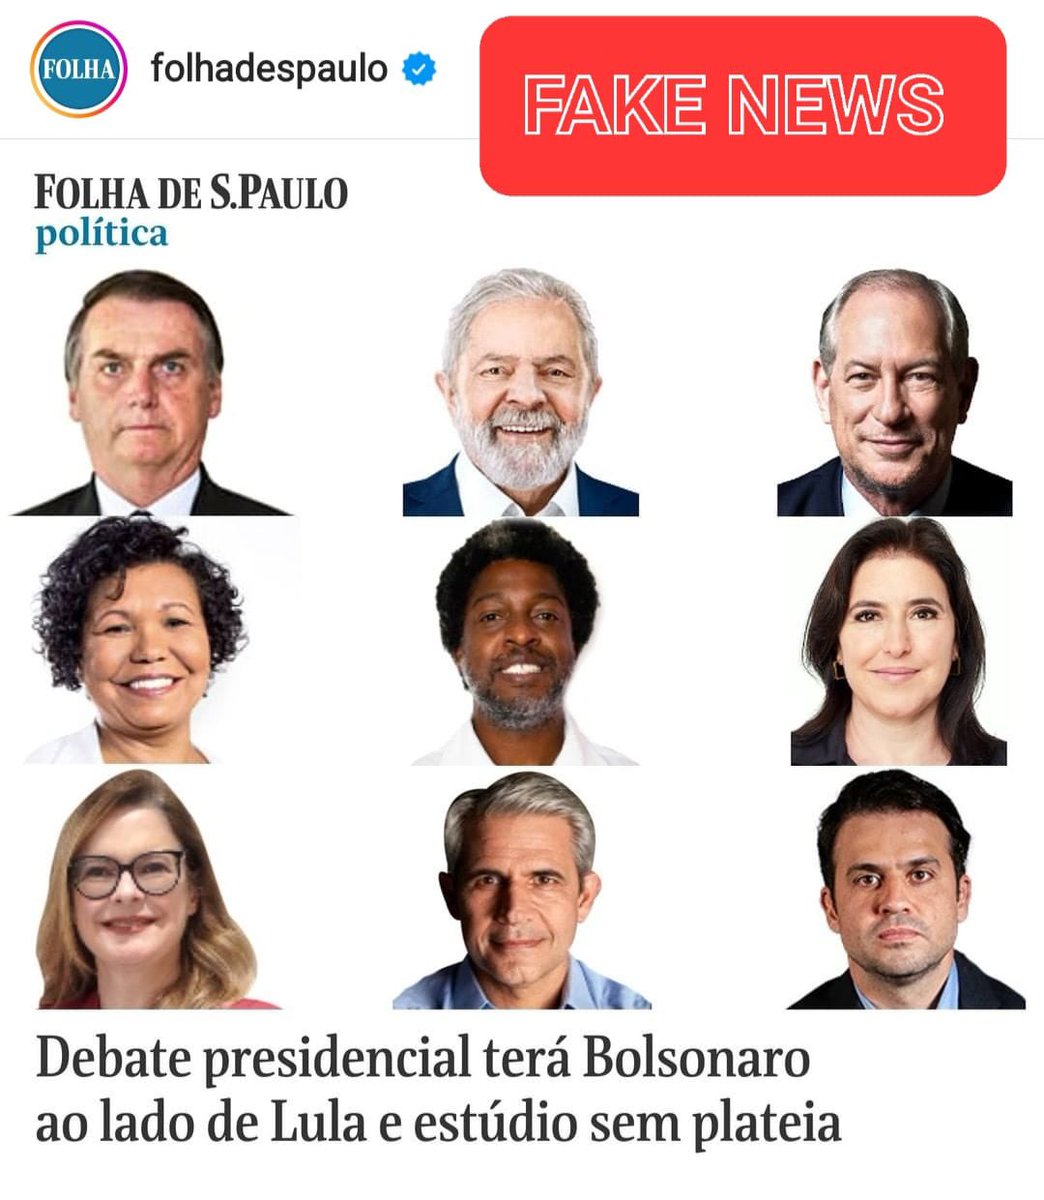 Fake news da @folha !! 

Publicou sobre o debate induzindo o público a pensar que todos os candidatos e candidatas na foro irão participar. 

SENDO QUE SOFIA MANZANO CONTINUA SENDO EXCLUÍDA DESSES ESPAÇOS, ASSIM COMO PROVAVELMENTE OUTROS CANDIDATOS NA FOTO.

#querosofianodebate